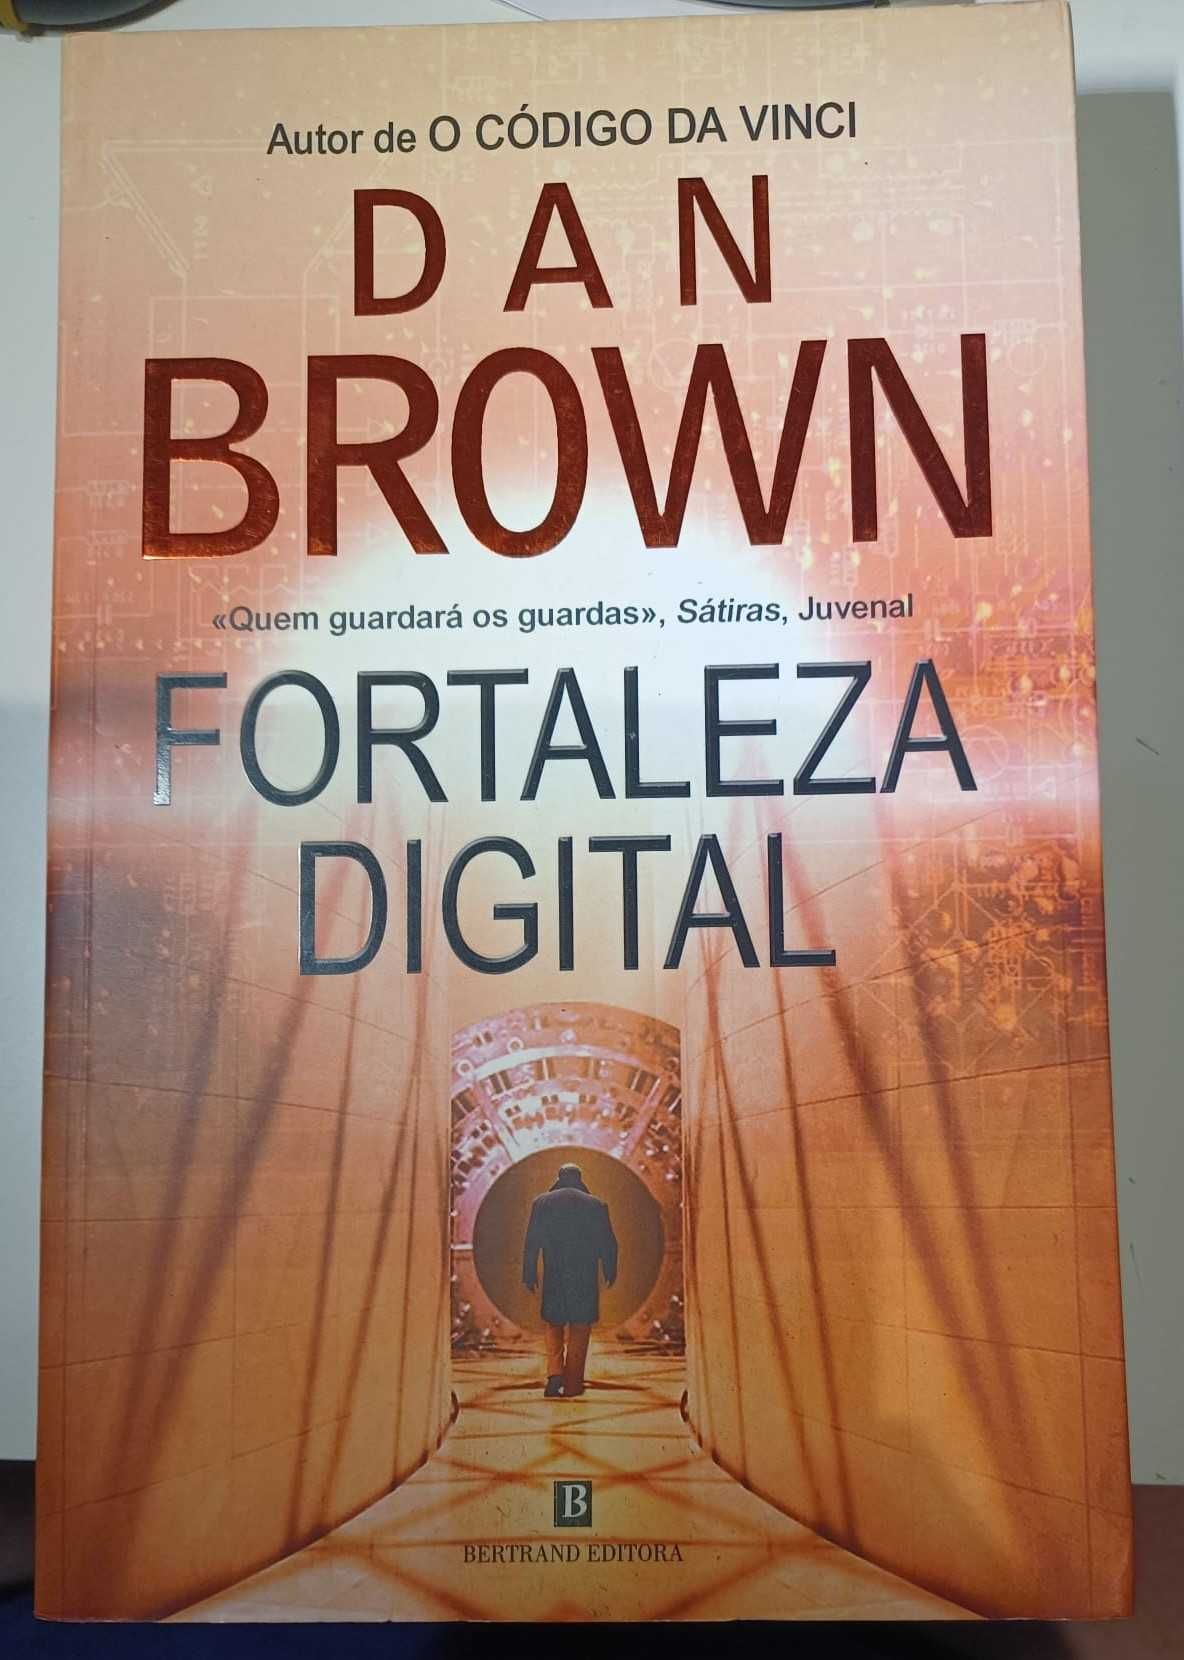 Fortaleza Digital

de Dan Brown